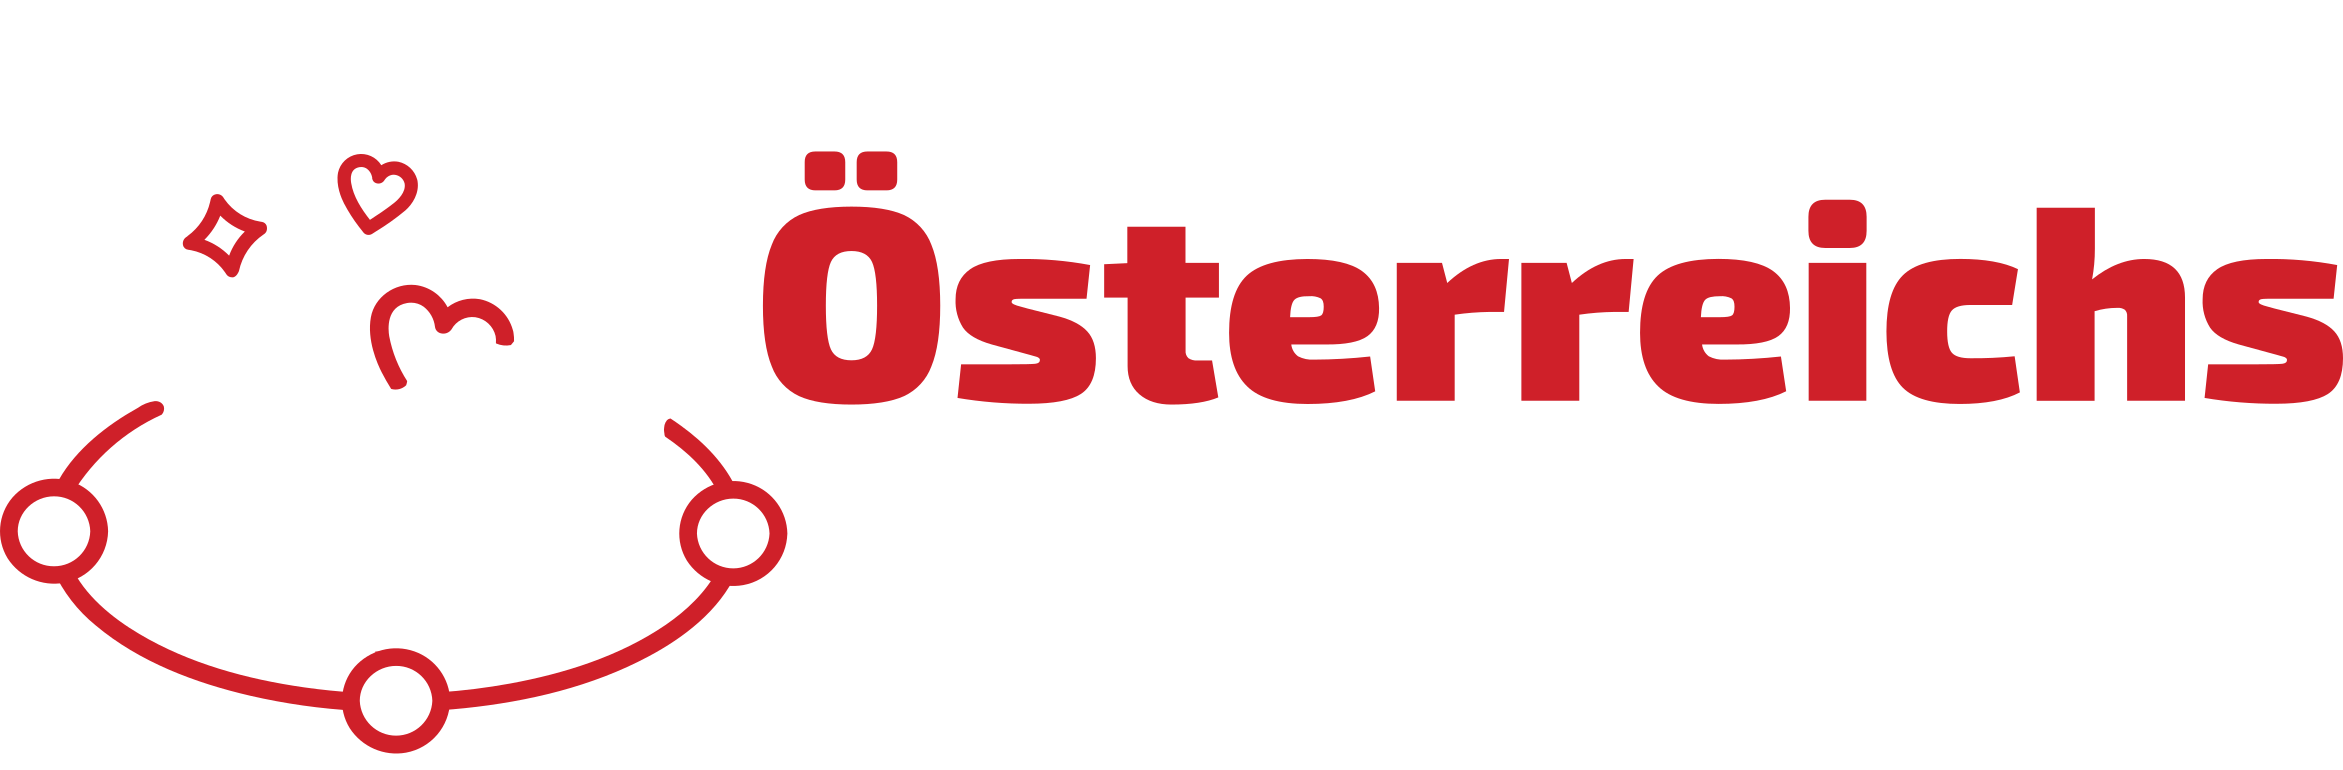 Oesterreich-Online-Casino